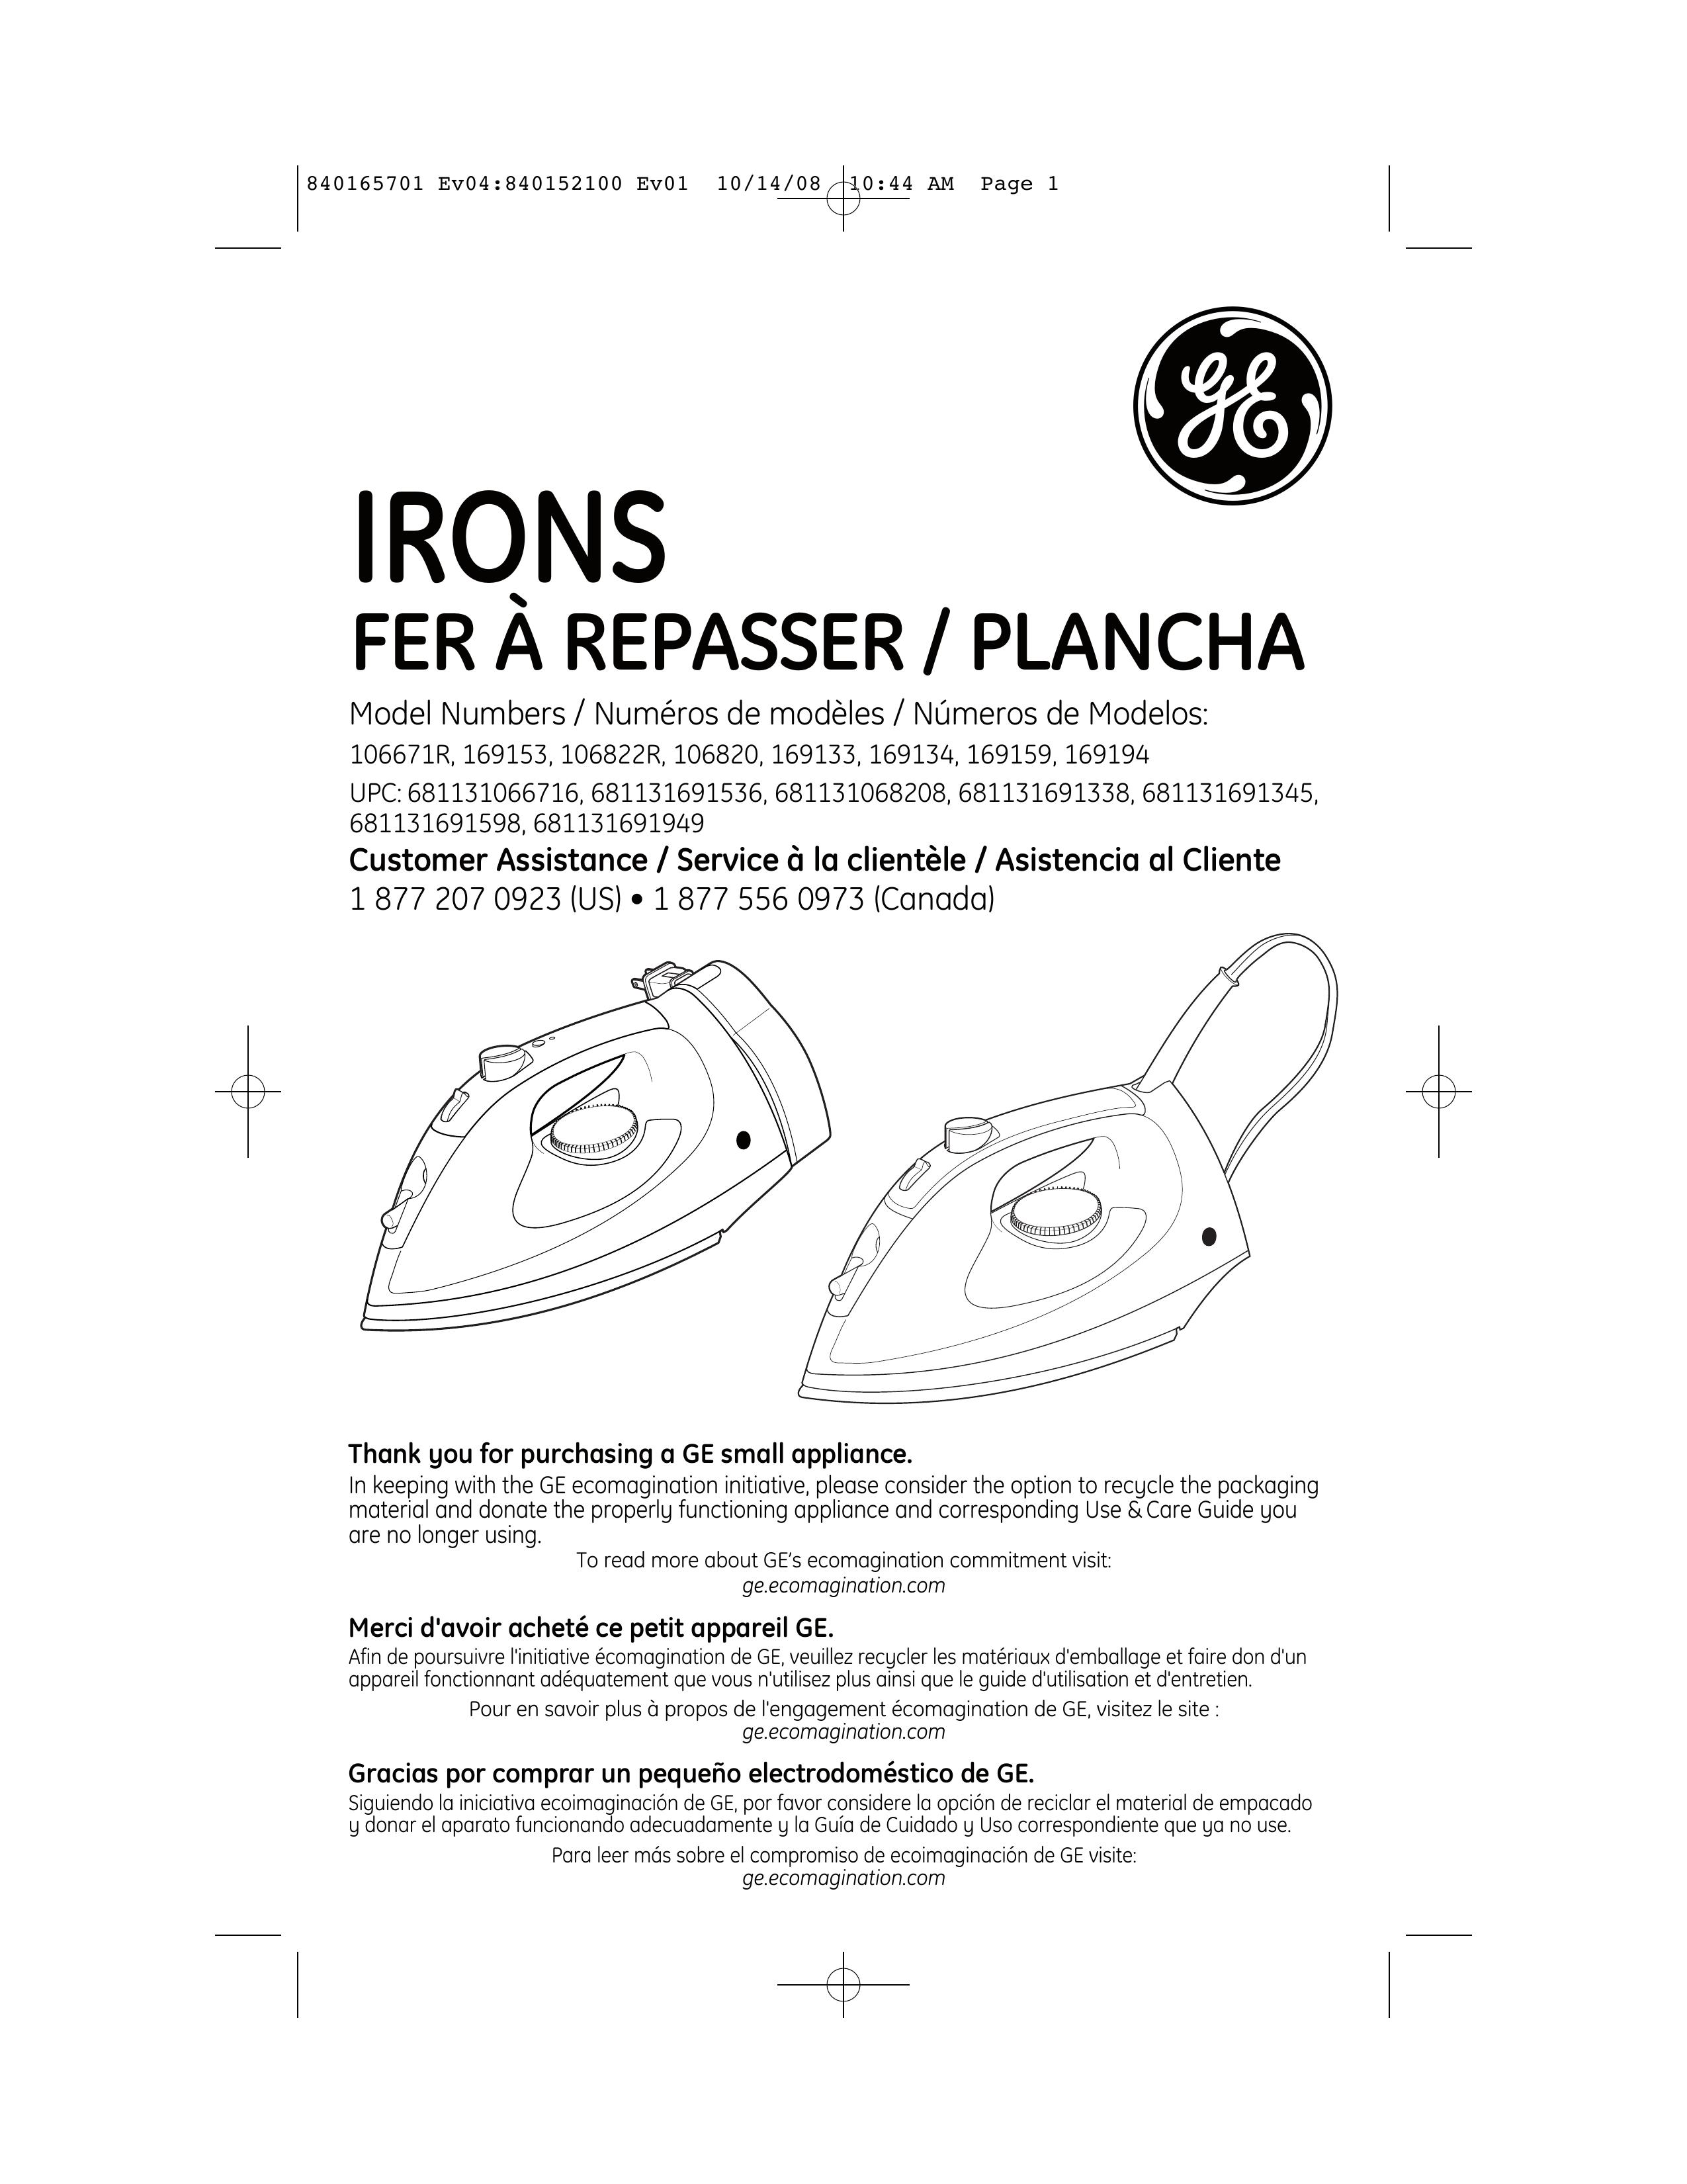 GE 681131691598 Iron User Manual